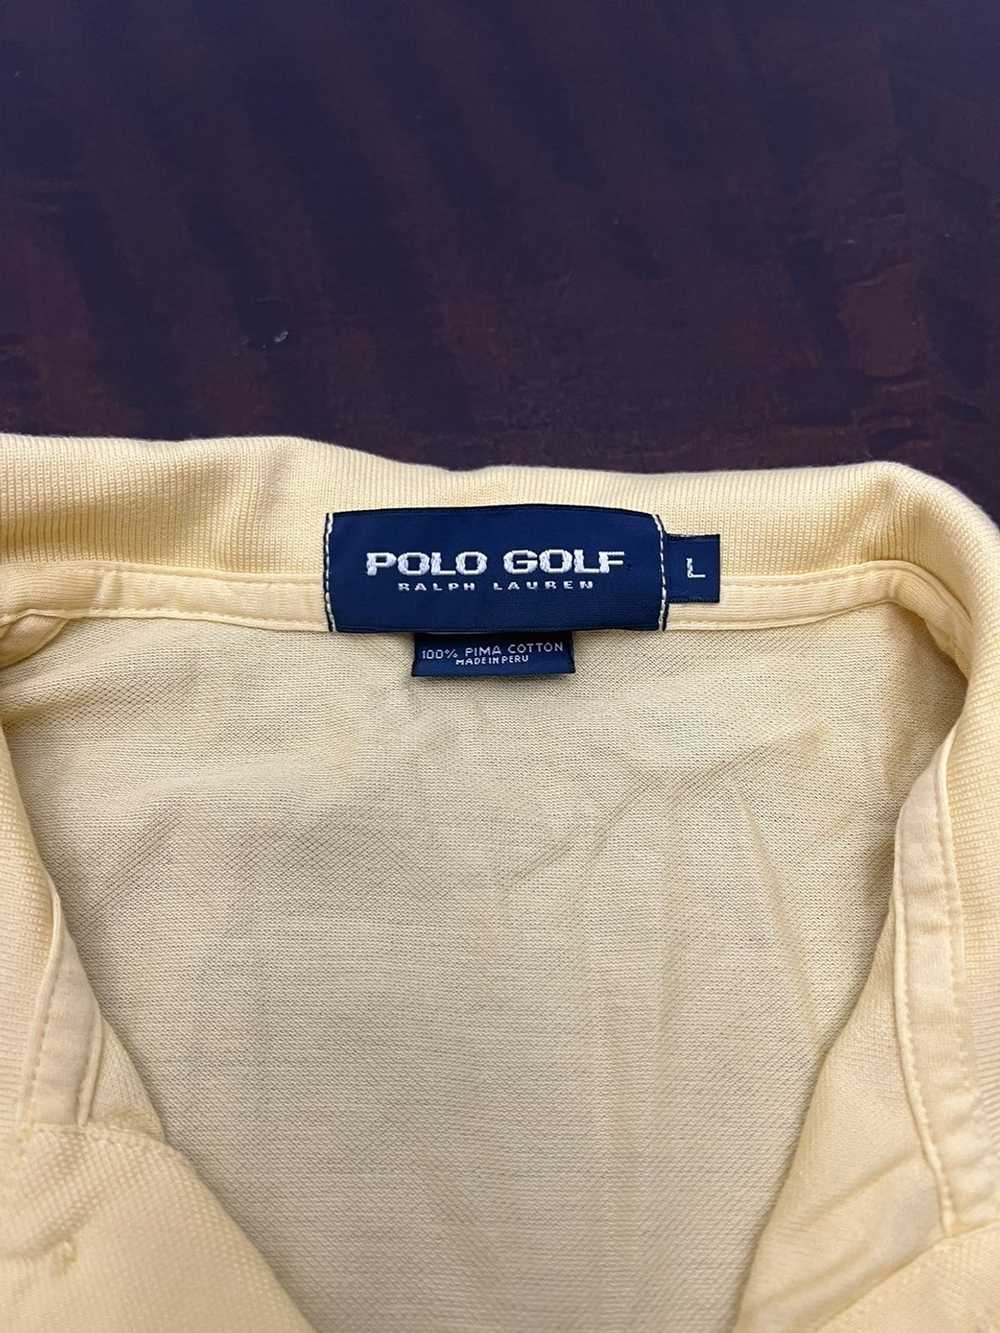 Polo Ralph Lauren ralph lauren golf polo - image 3